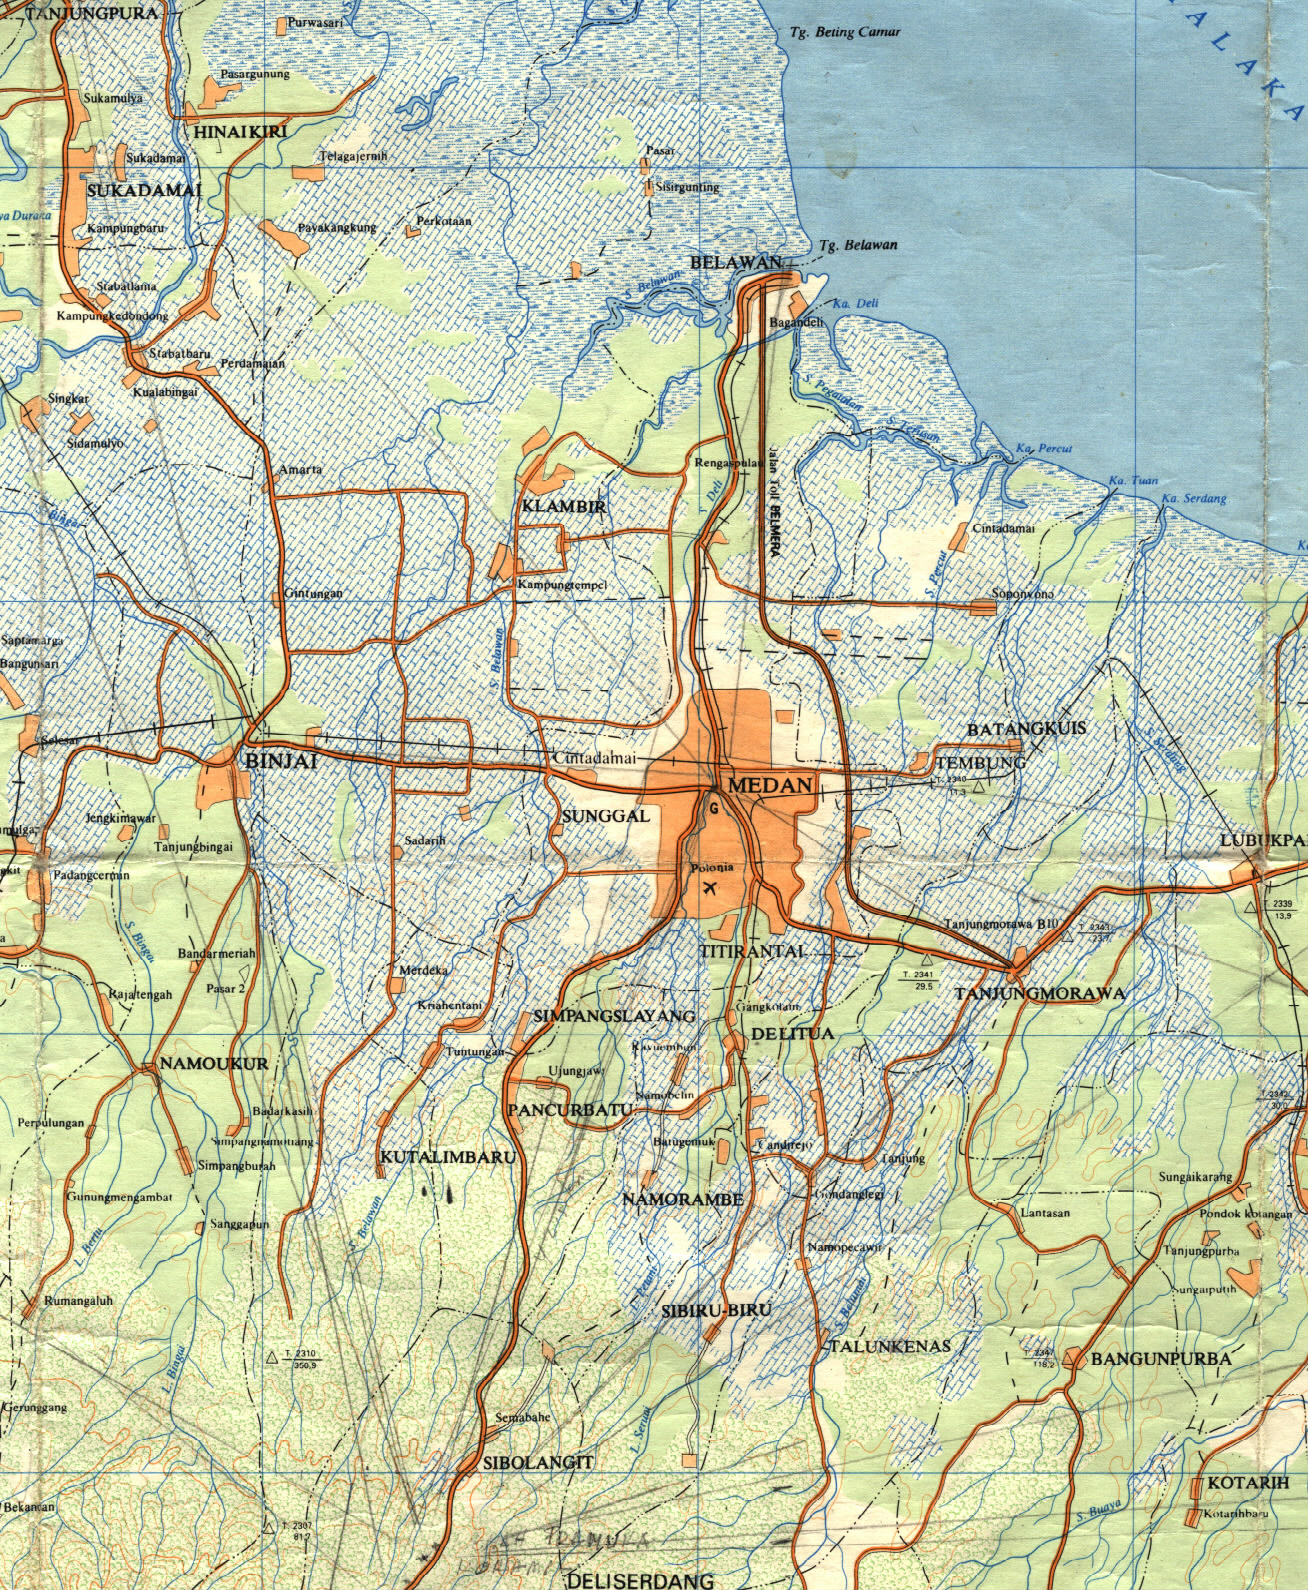 TAKJUB INDONESIA Peta  Topografi Medan  skala 50k dan 250k